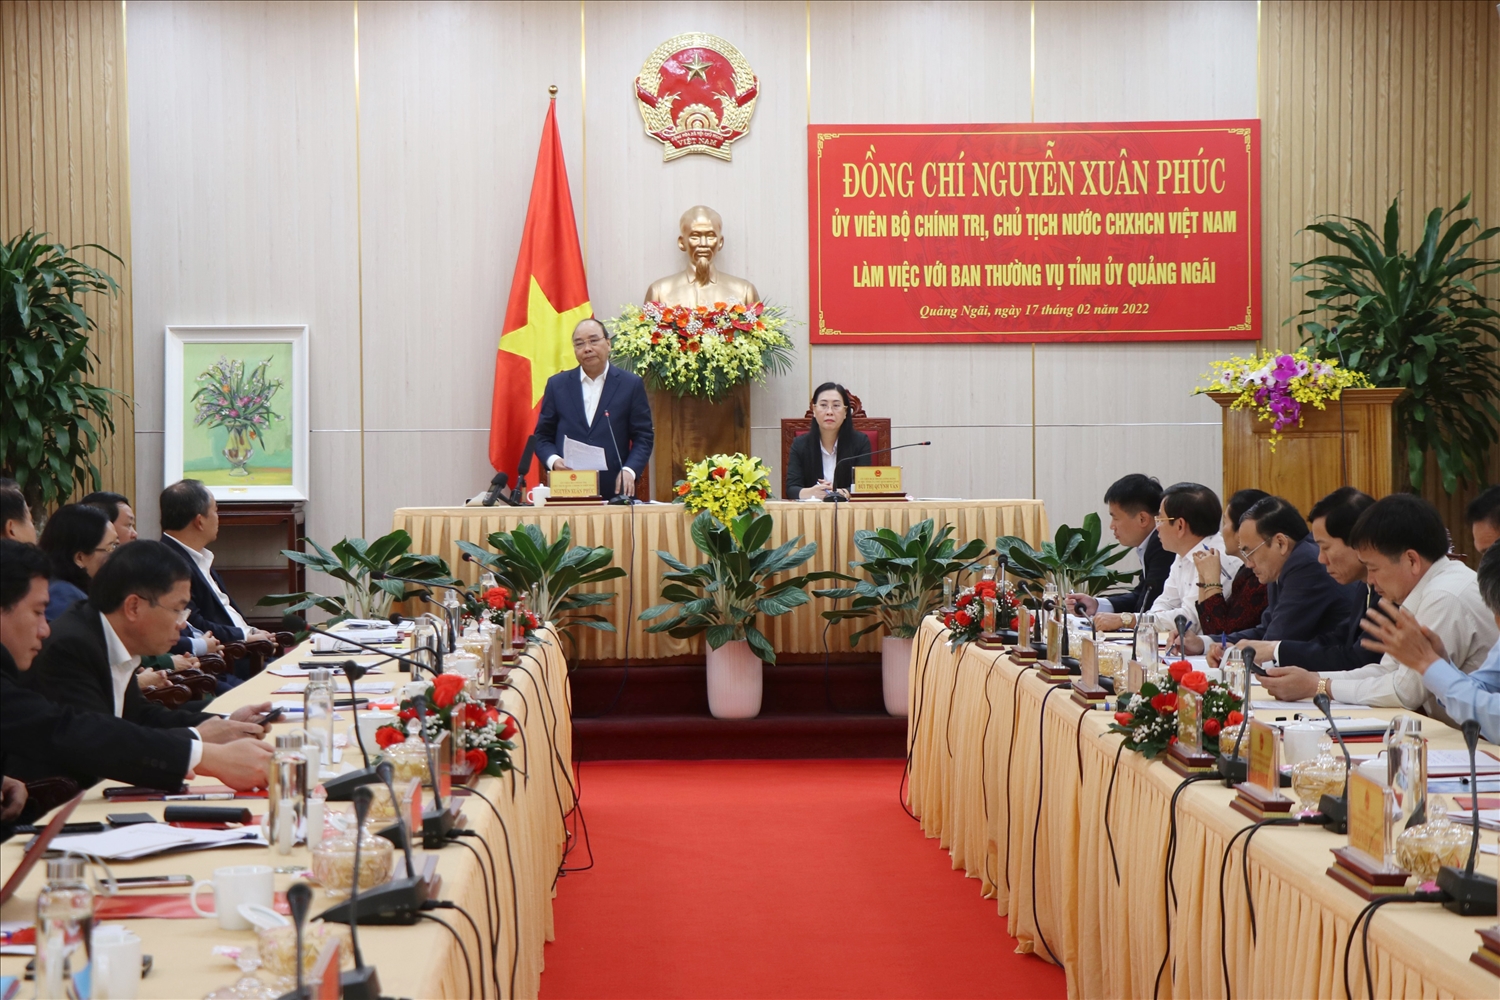 Chủ tịch nước Nguyễn Xuân Phúc phát biểu tại buổi làm việc với với Ban Thường vụ Tỉnh ủy Quảng Ngãi